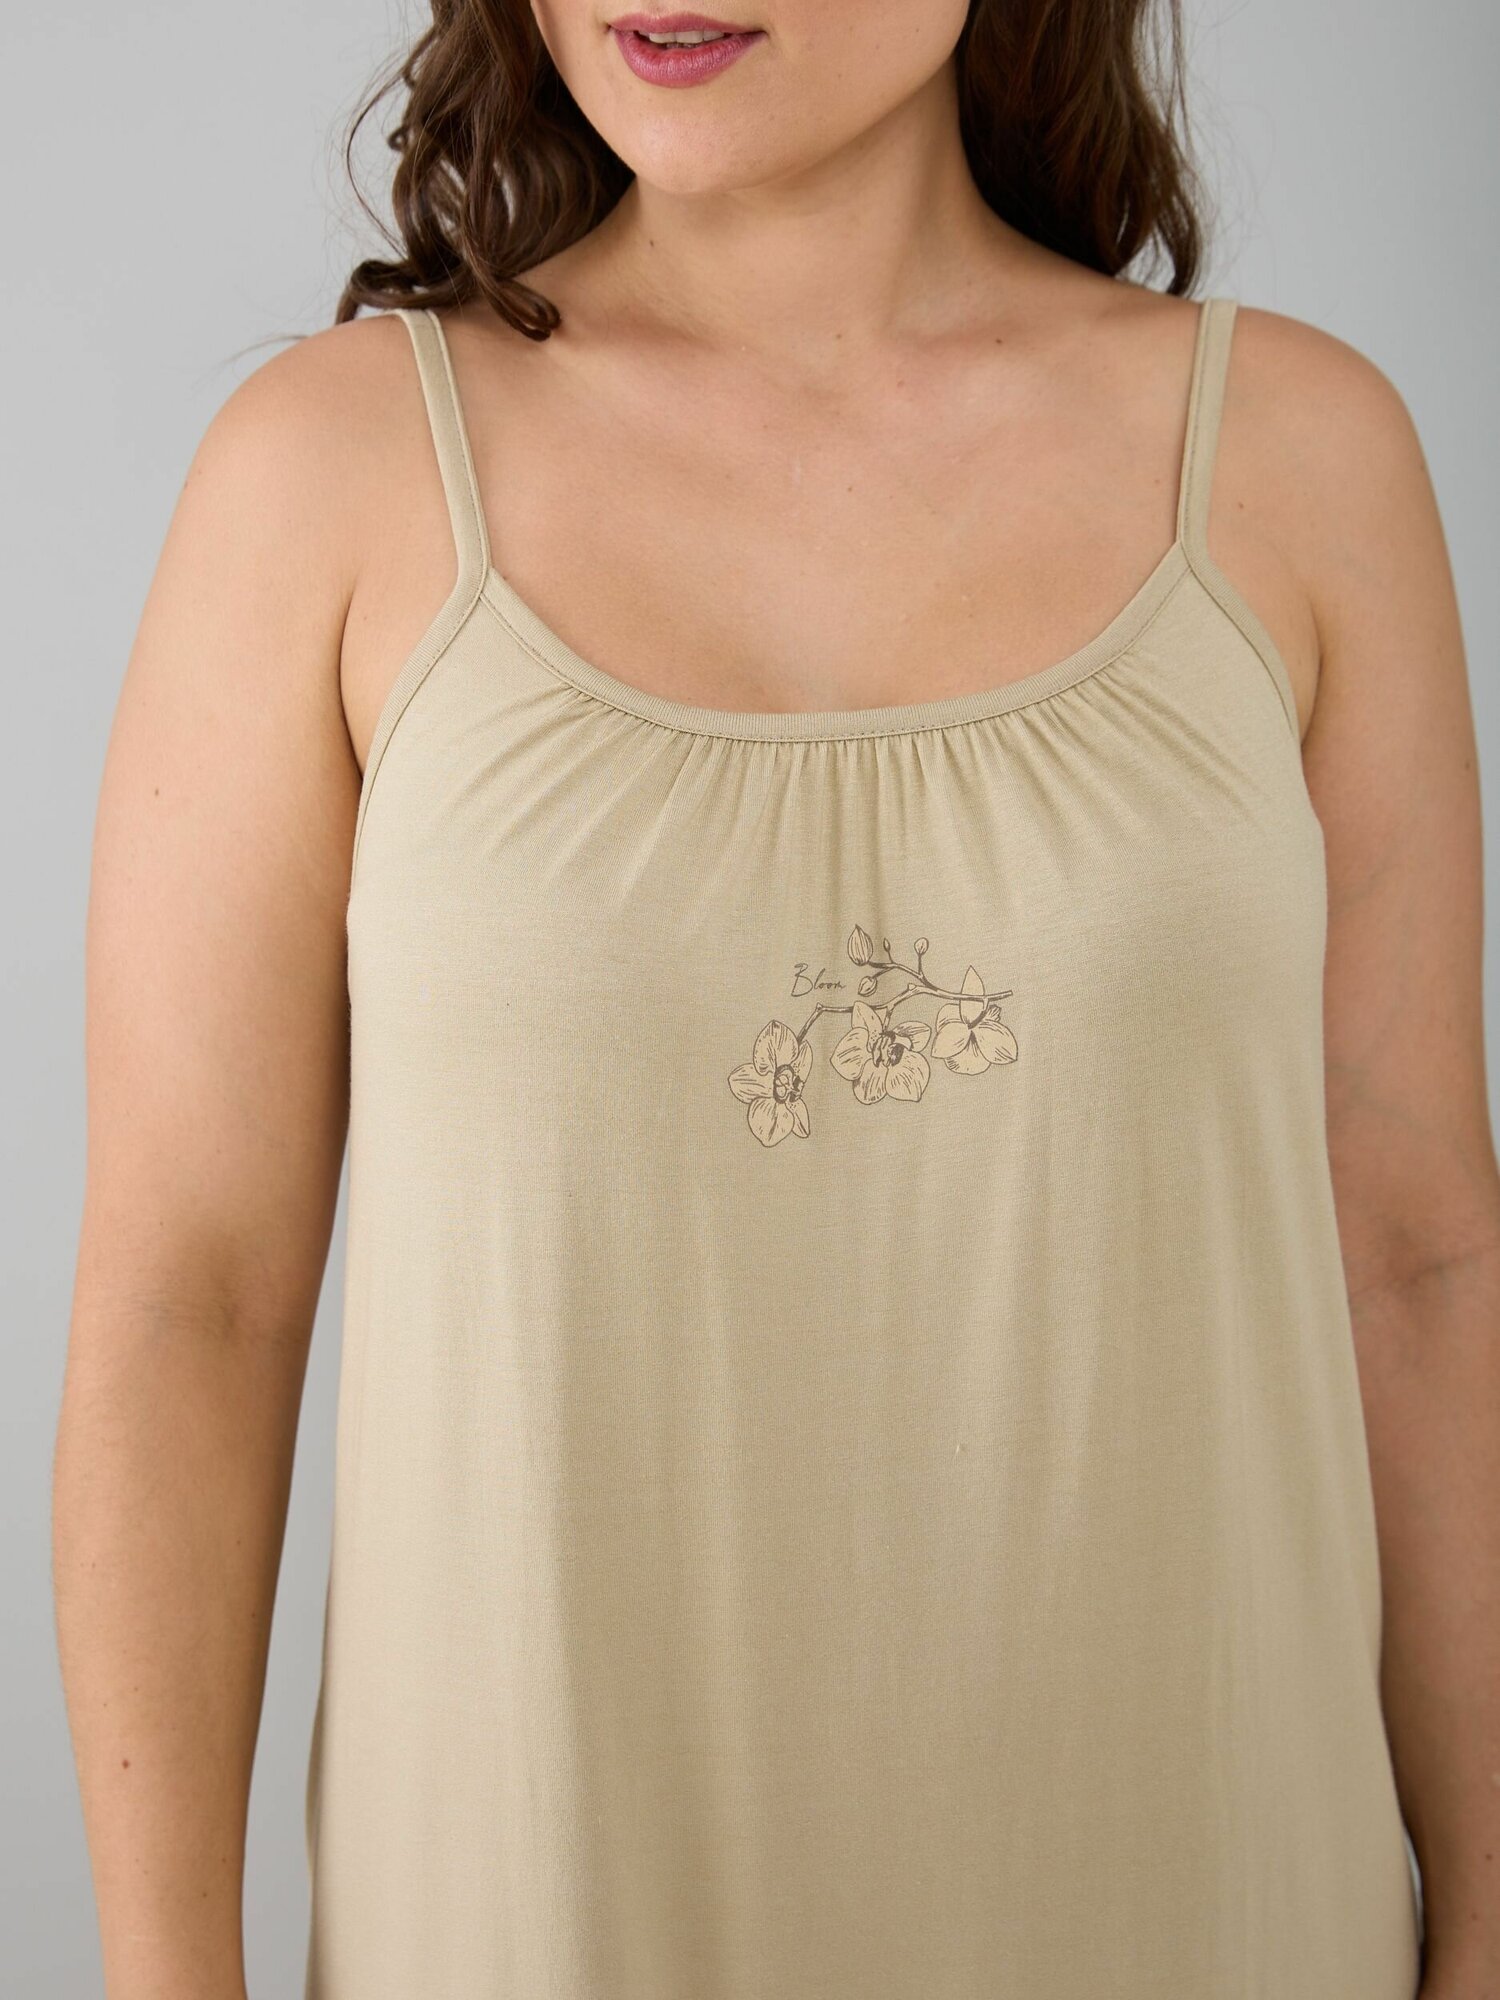 Ночная рубашка женская Алтекс на бретельках бежевая, размер 44 - фотография № 7